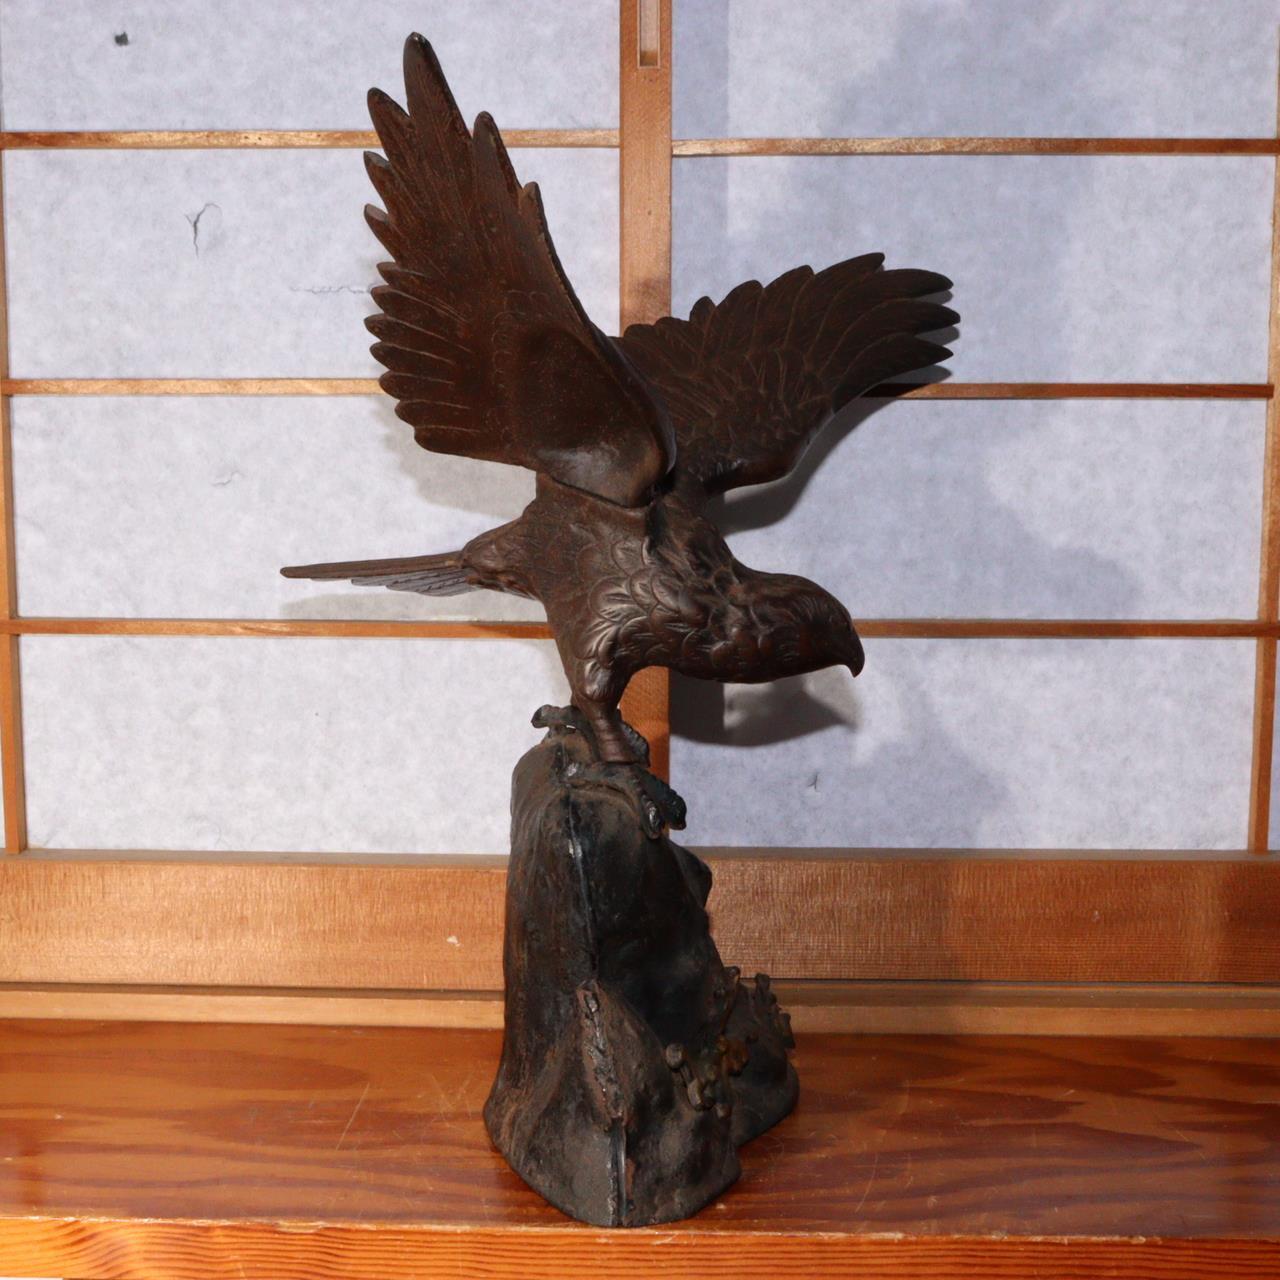 Japanese Vintage Iron Hawk figurine Ornament BOS772